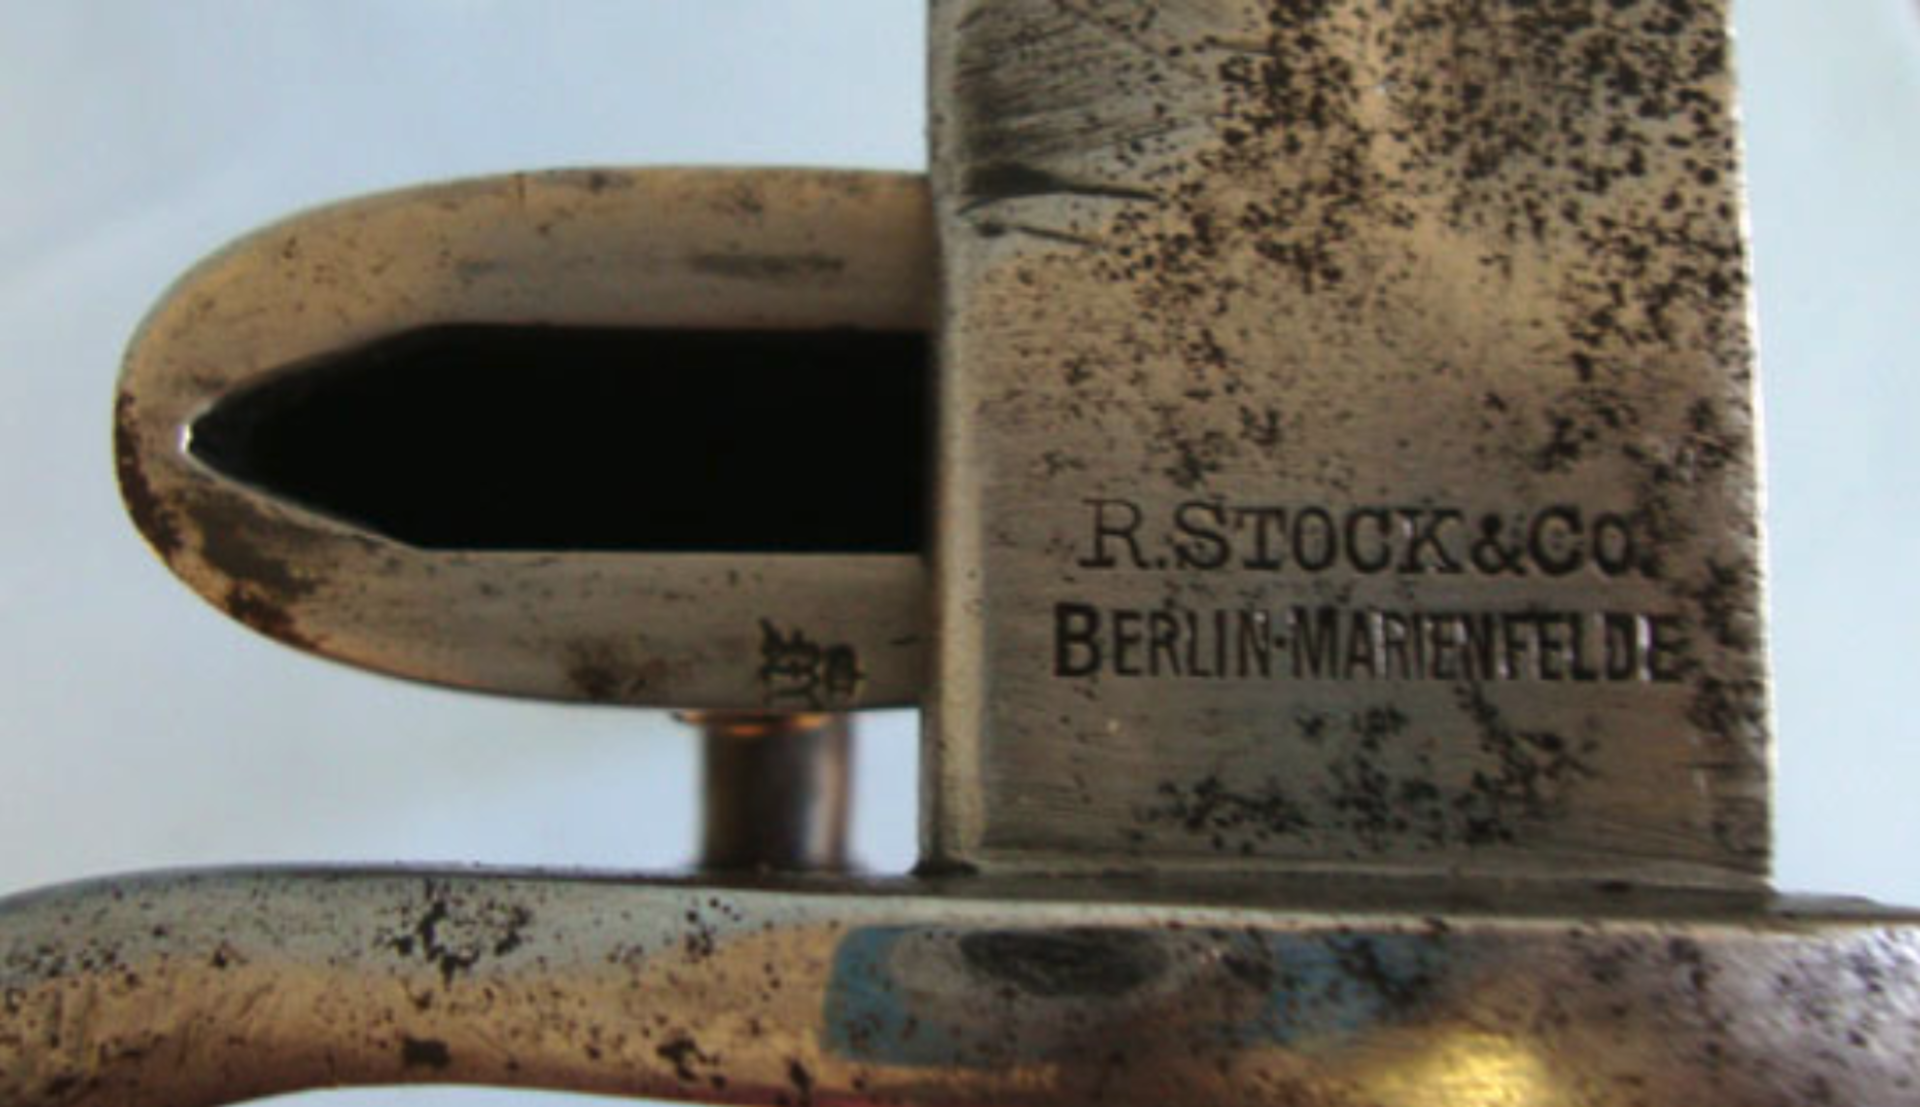 1916 German Model 1898/05 G98 Mauser 'Butcher Knife' Bayonet By R. Stock & Co. Berlin Marienfelde - Image 2 of 3